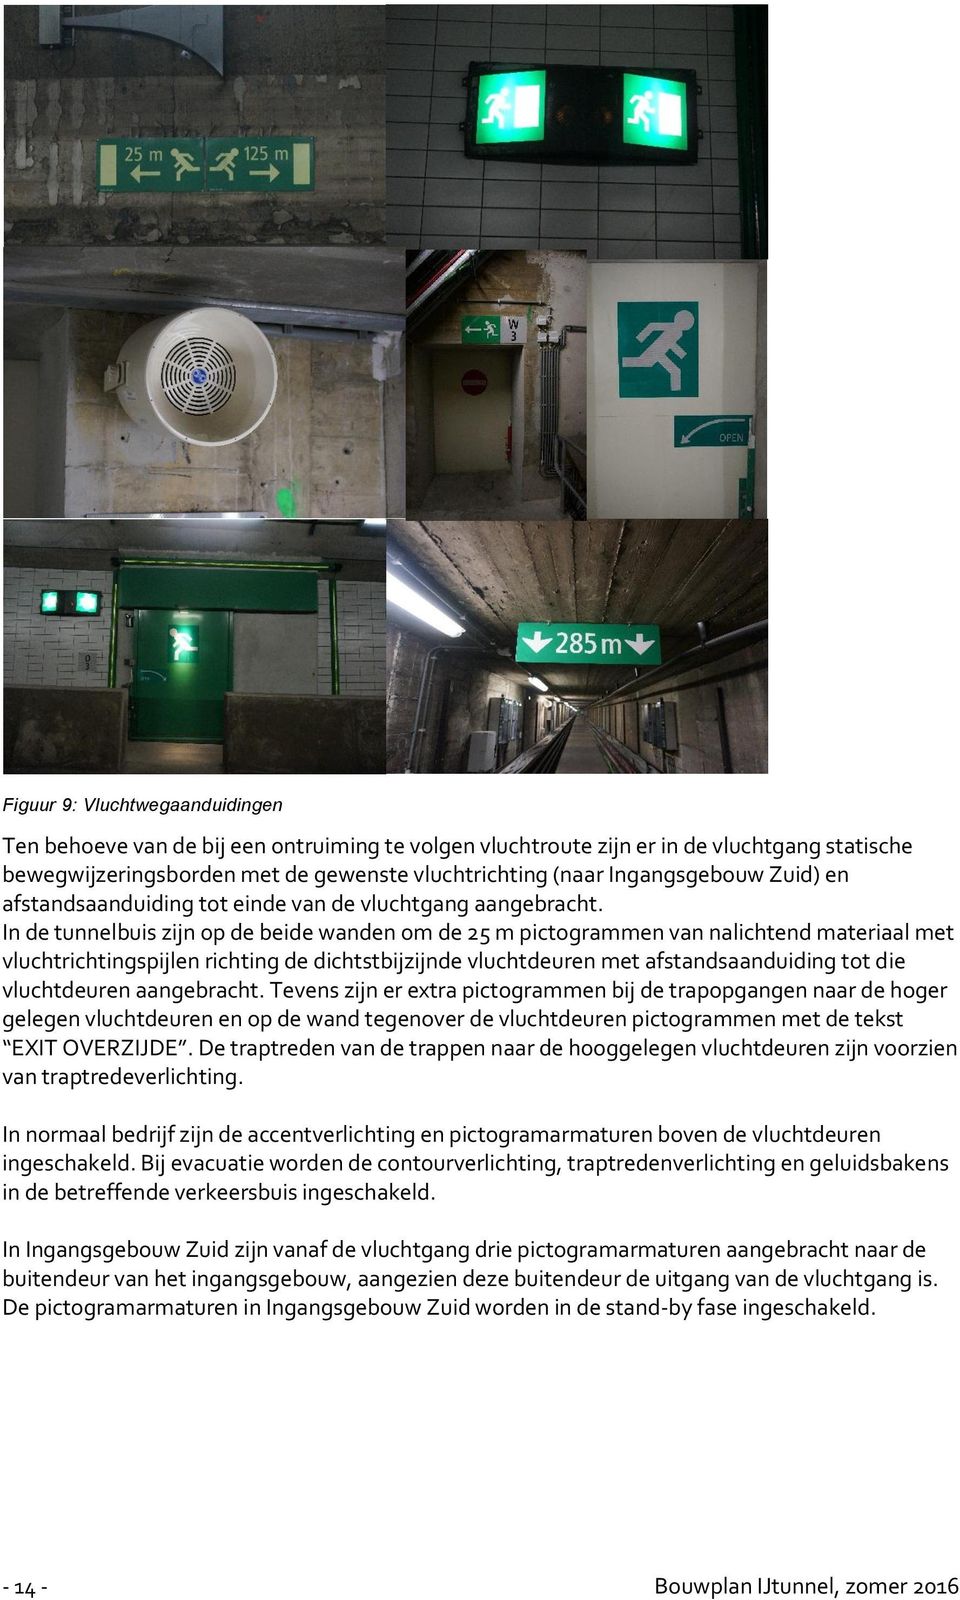 In de tunnelbuis zijn op de beide wanden om de 25 m pictogrammen van nalichtend materiaal met vluchtrichtingspijlen richting de dichtstbijzijnde vluchtdeuren met afstandsaanduiding tot die